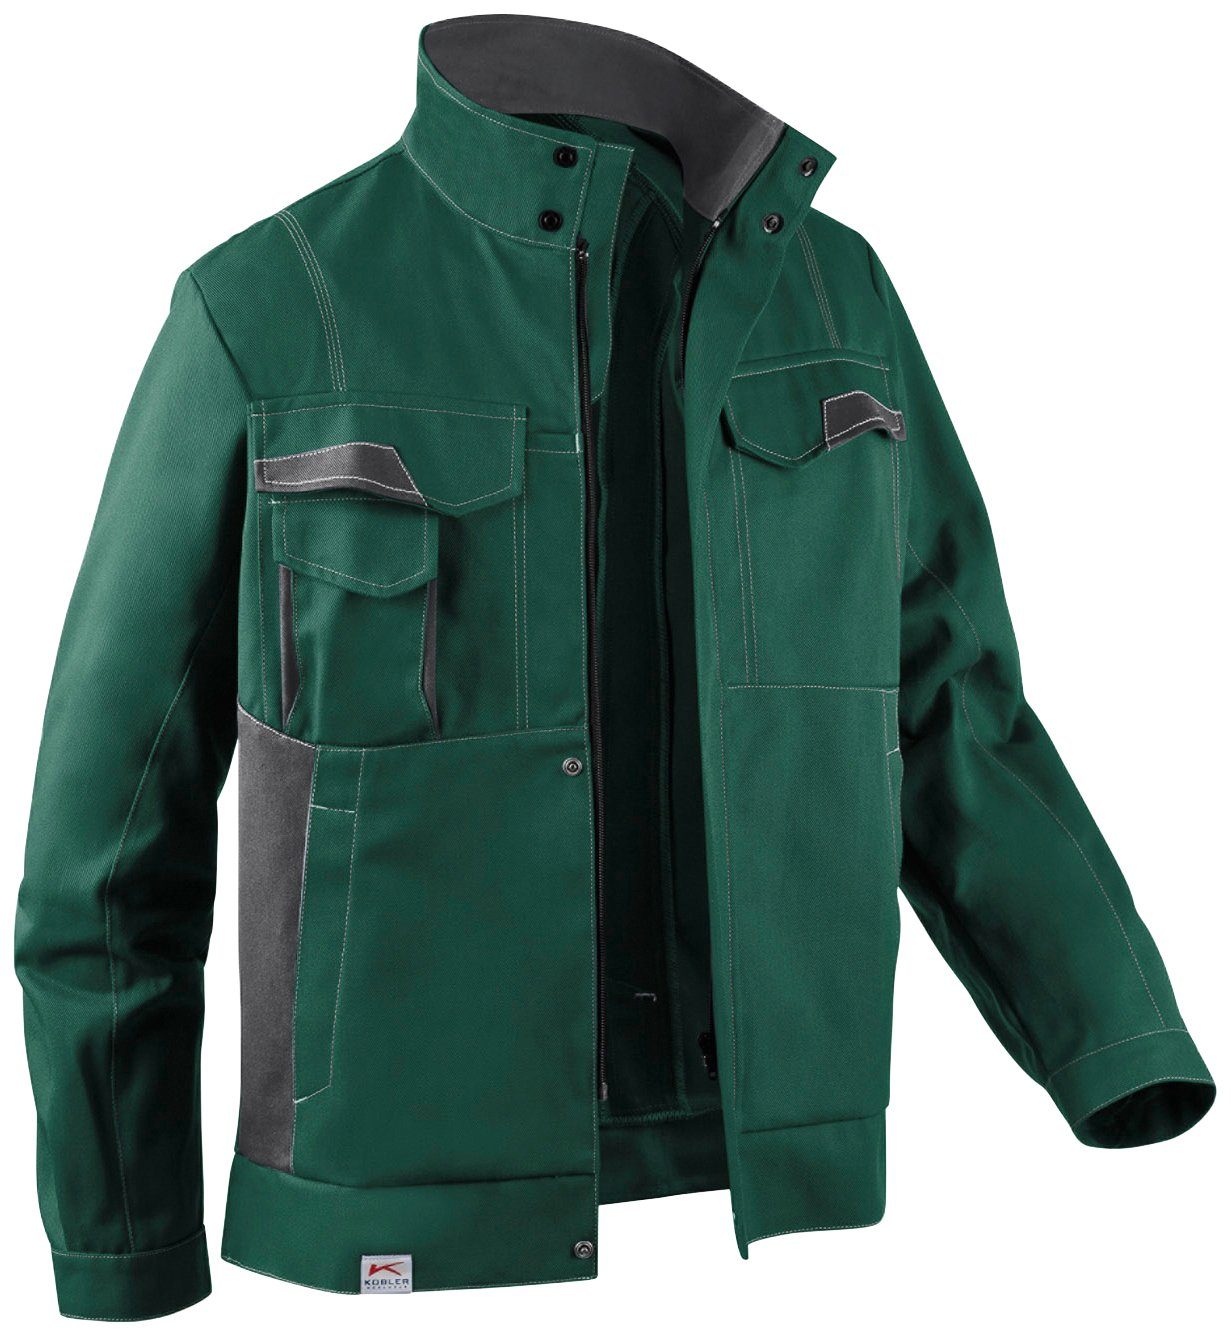 [Produkte zu supergünstigen Preisen] Kübler Arbeitsjacke Image Taschen 7 Design moosgrün-anthrazit New Dress mit